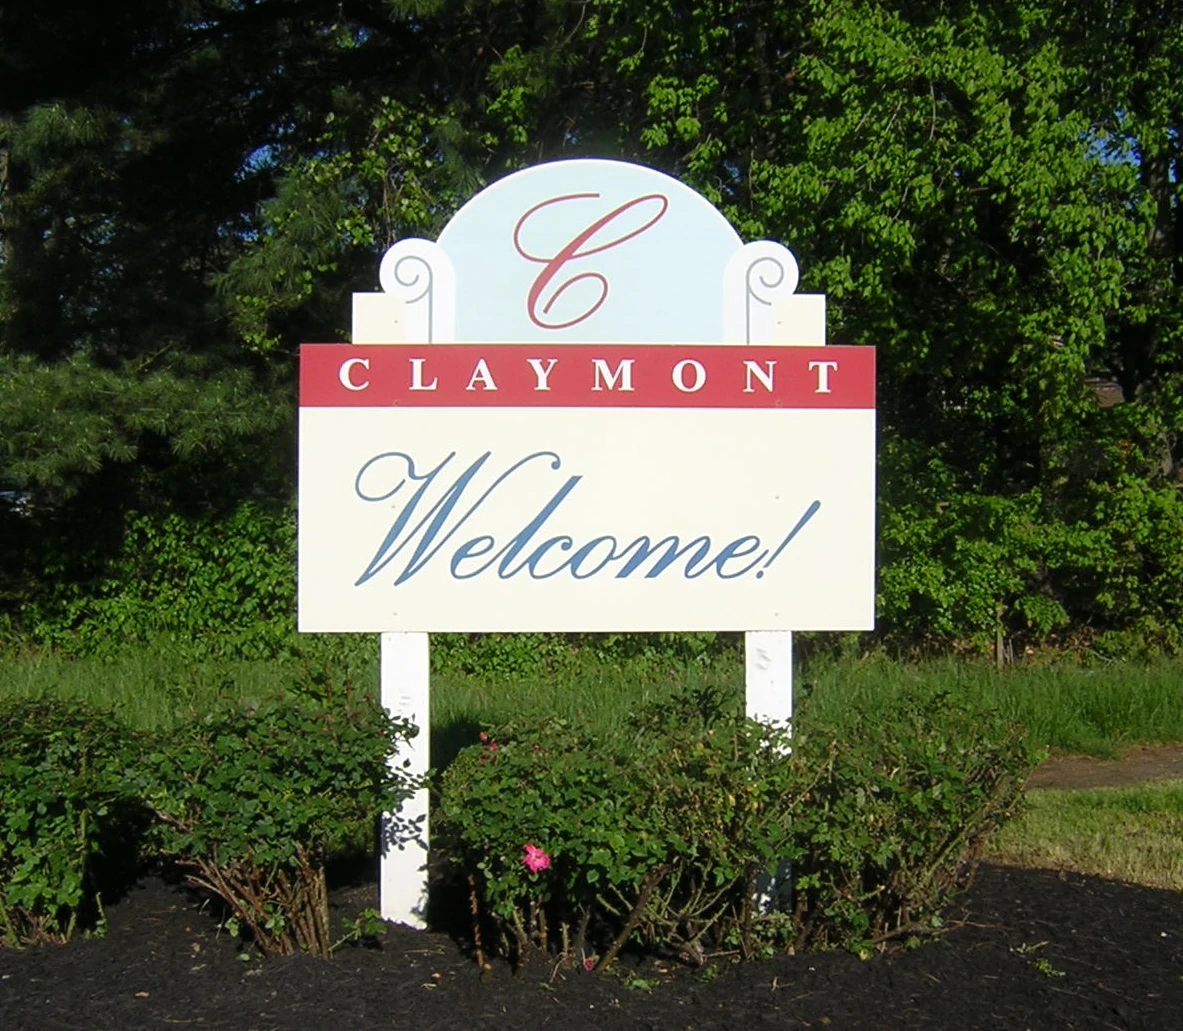 Claymont, DE Industrial Drafting Design